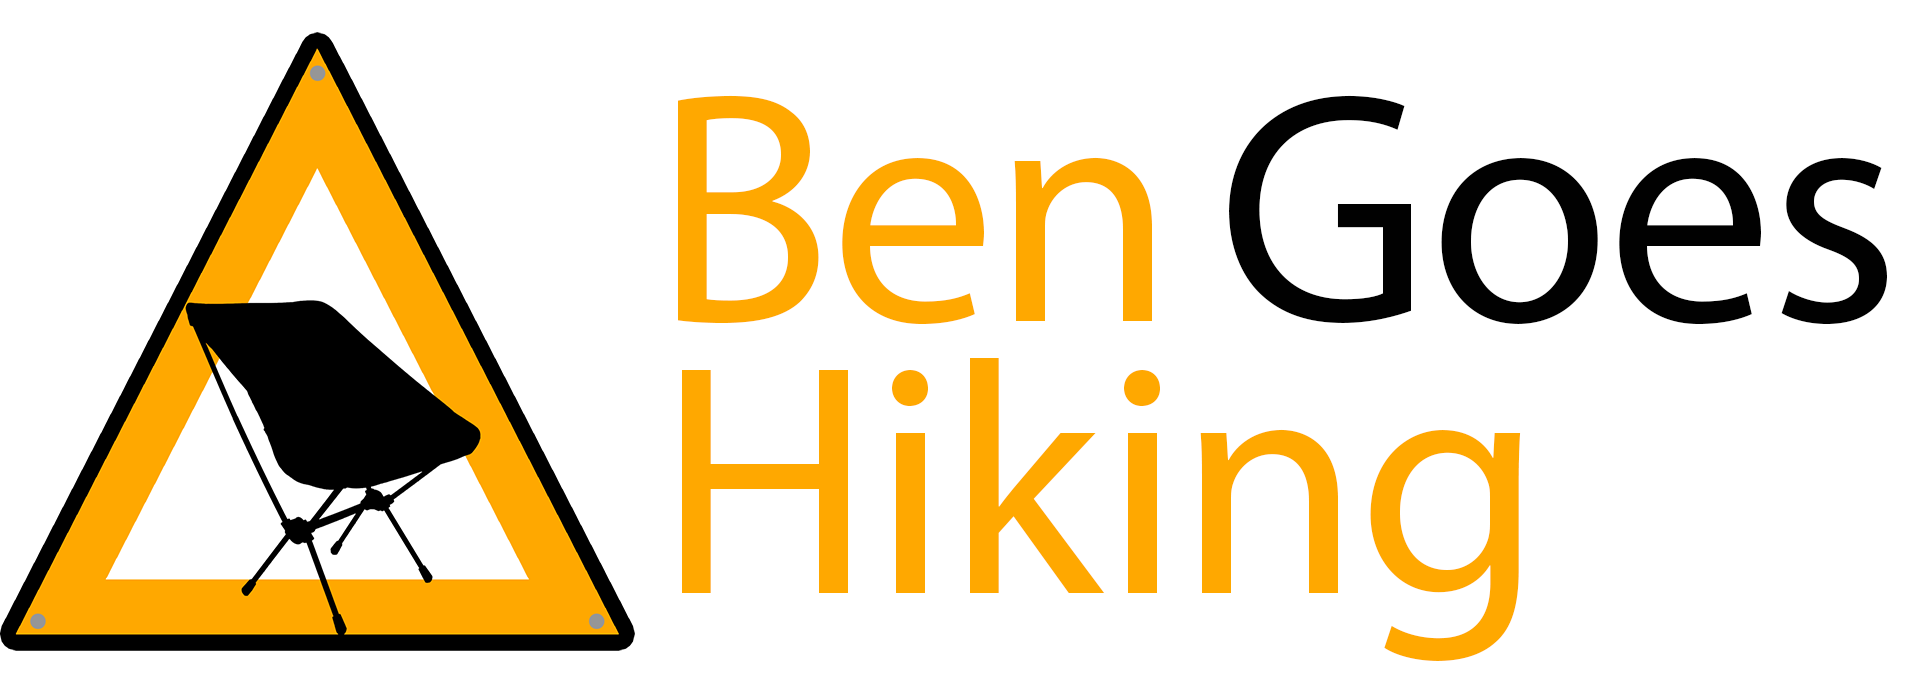 Ben Goes Hiking